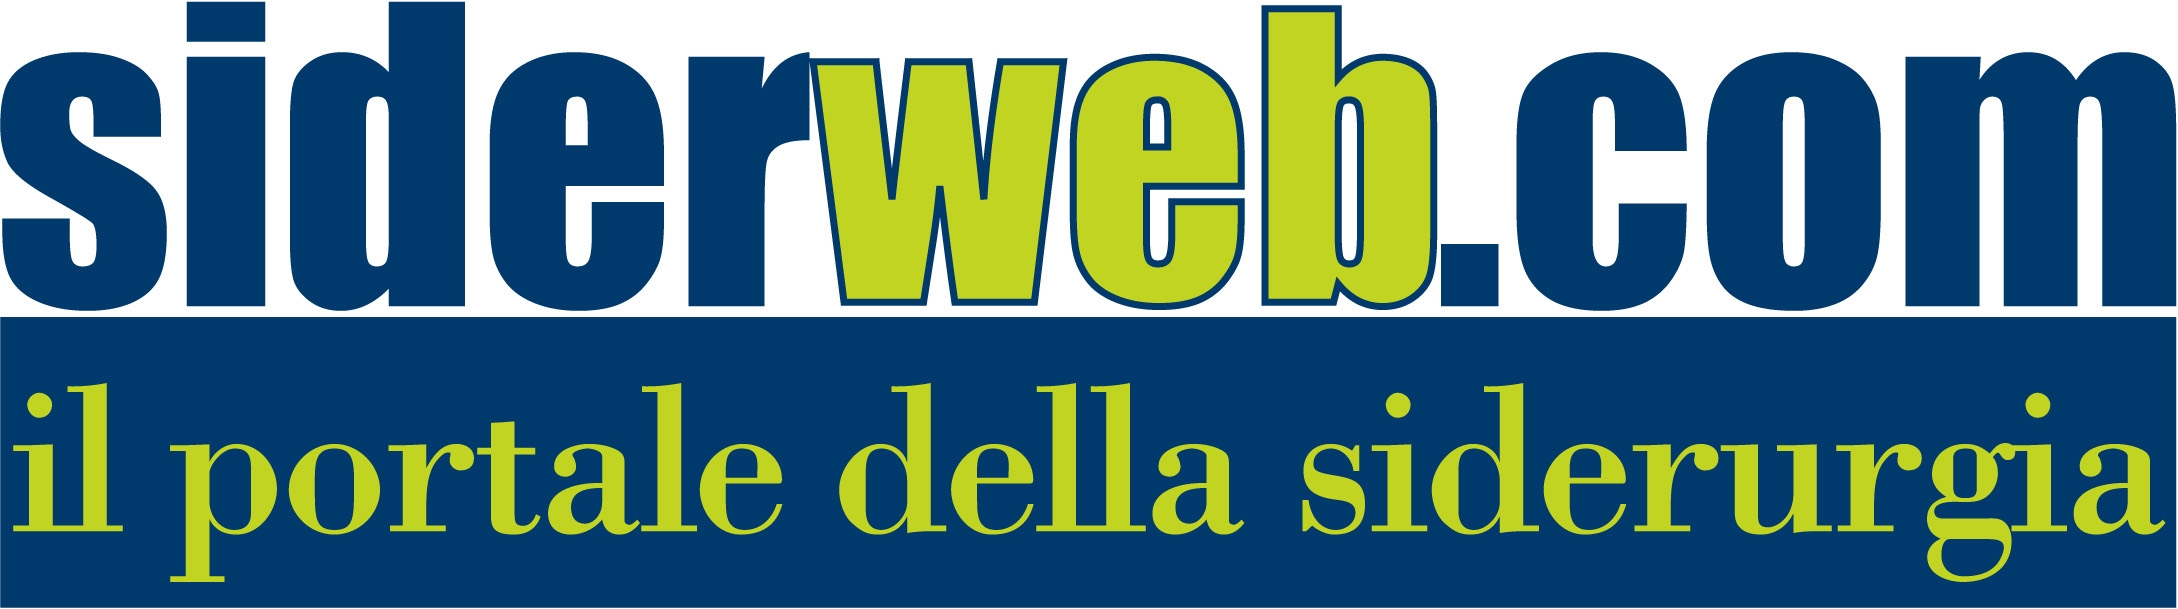 Siderweb surveys trends in Italian flats market